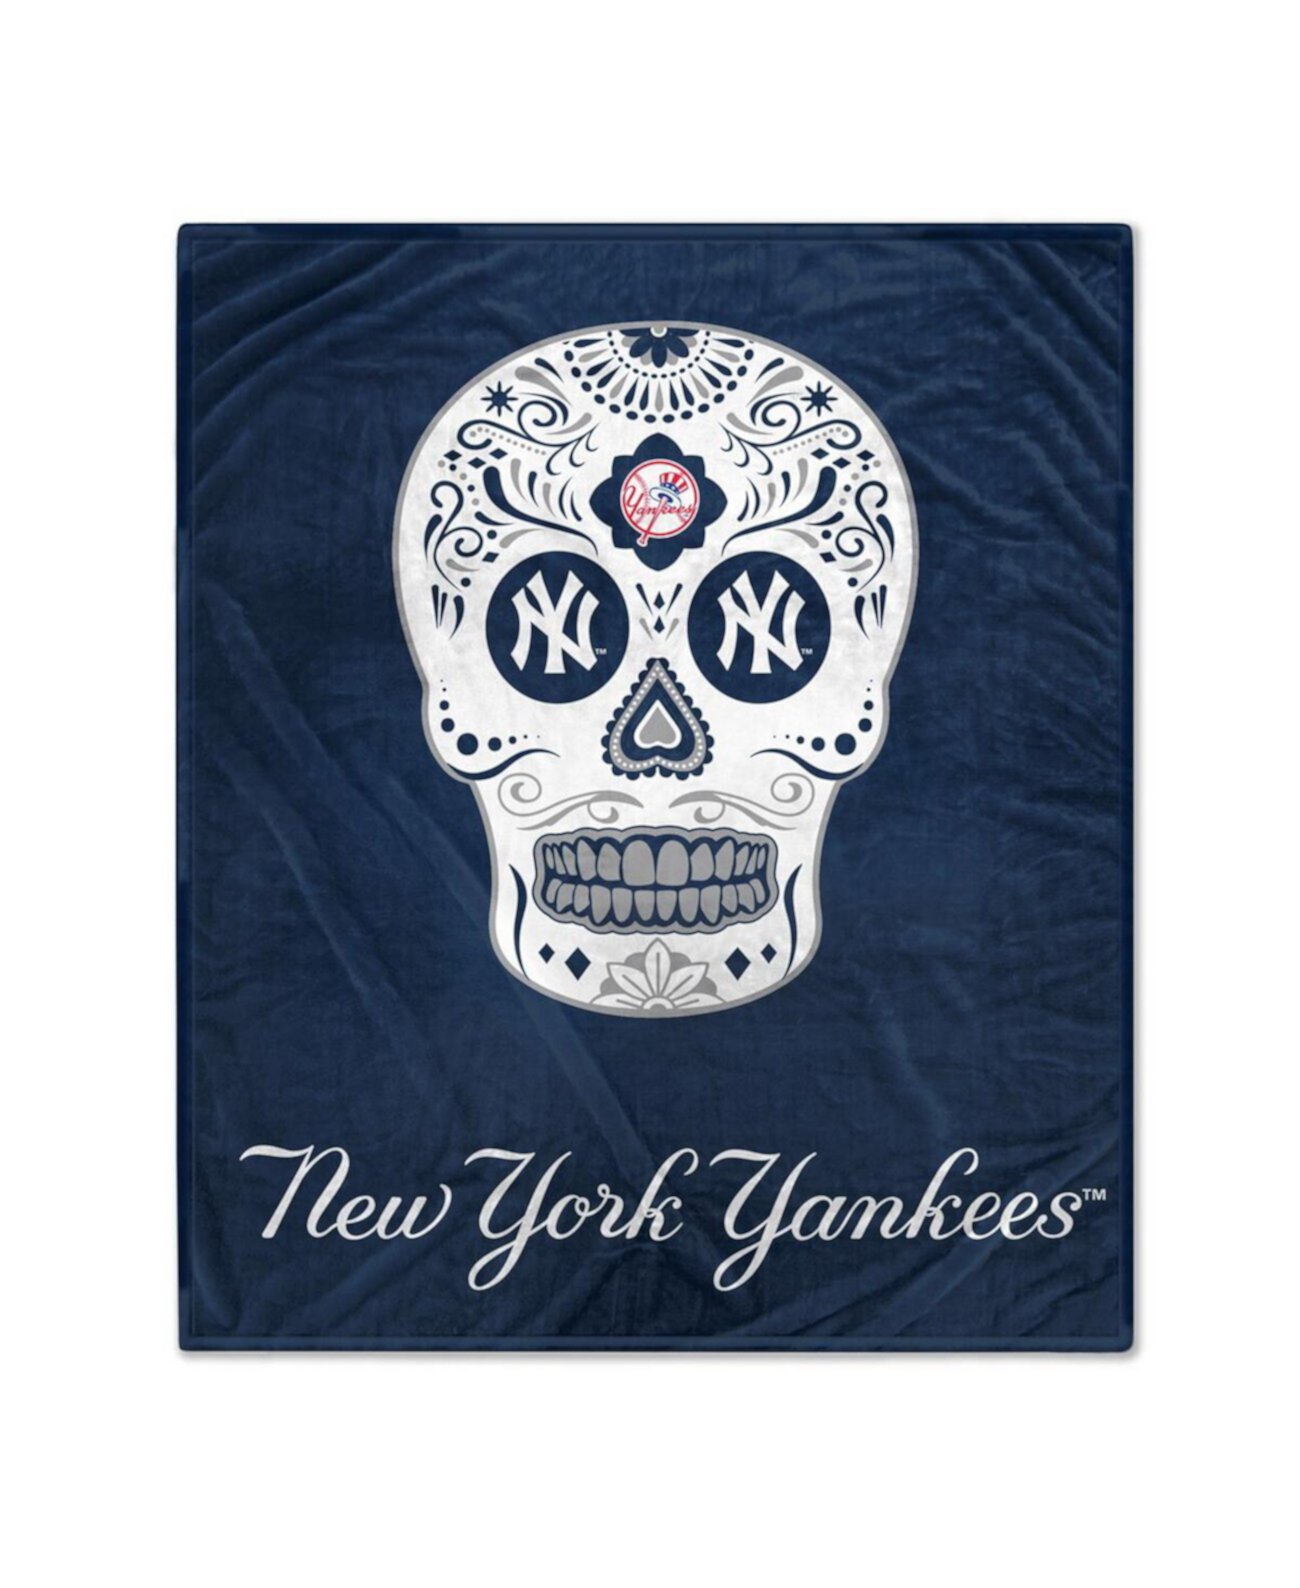 Флисовое одеяло New York Yankees размером 60 x 70 дюймов с сахарным черепом Pegasus Home Fashions